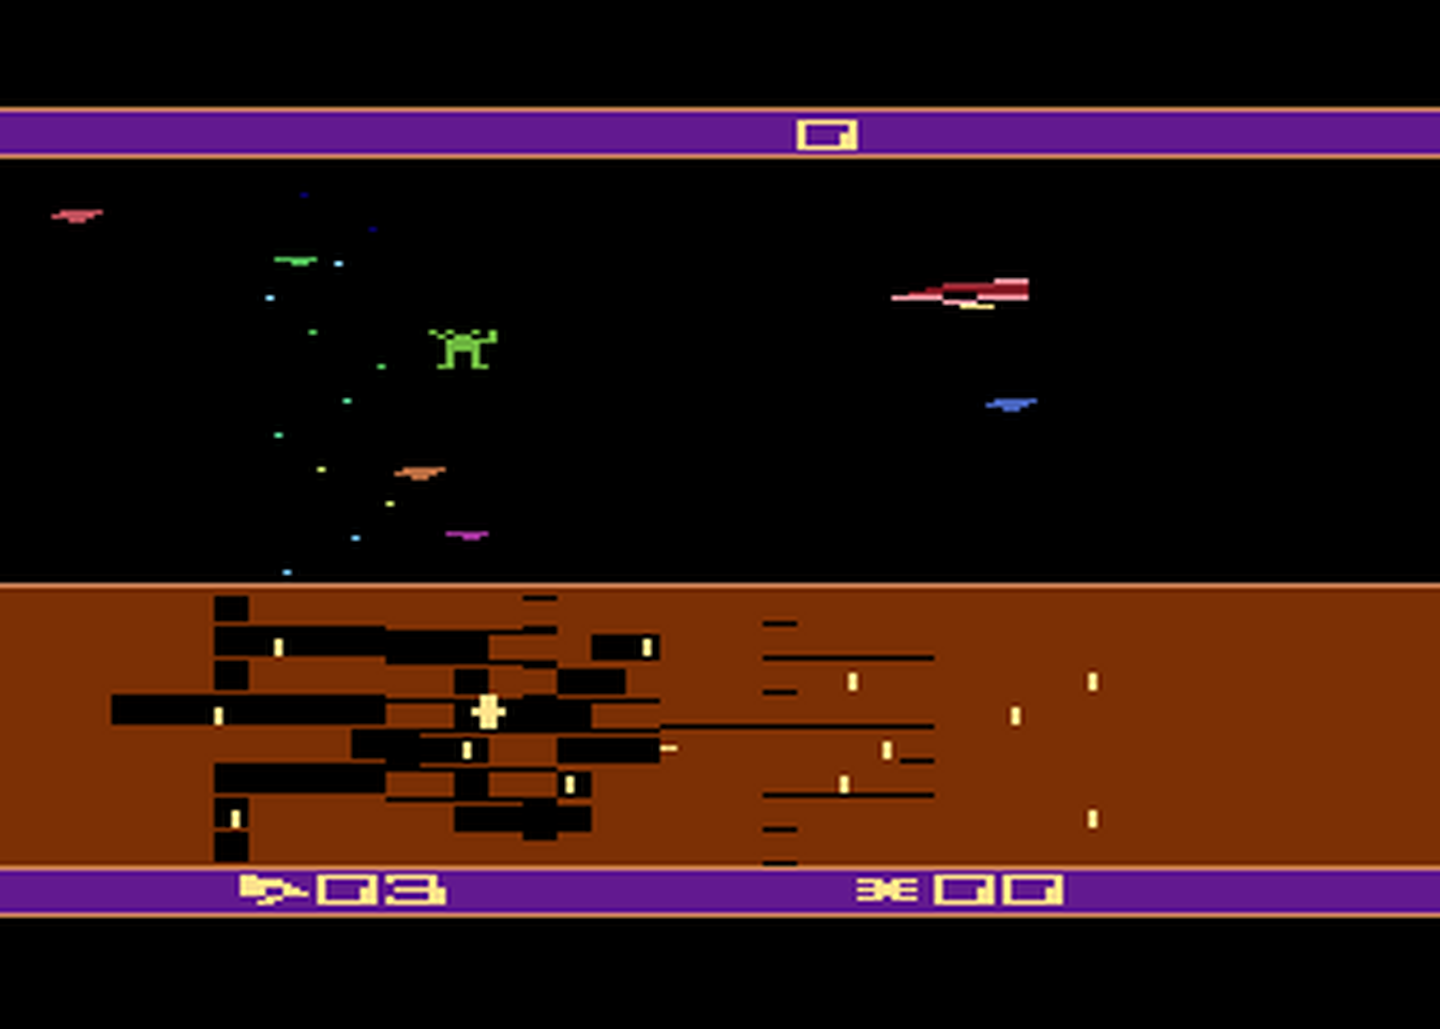 Atari GameBase Spider_City Sirius_Software 1983